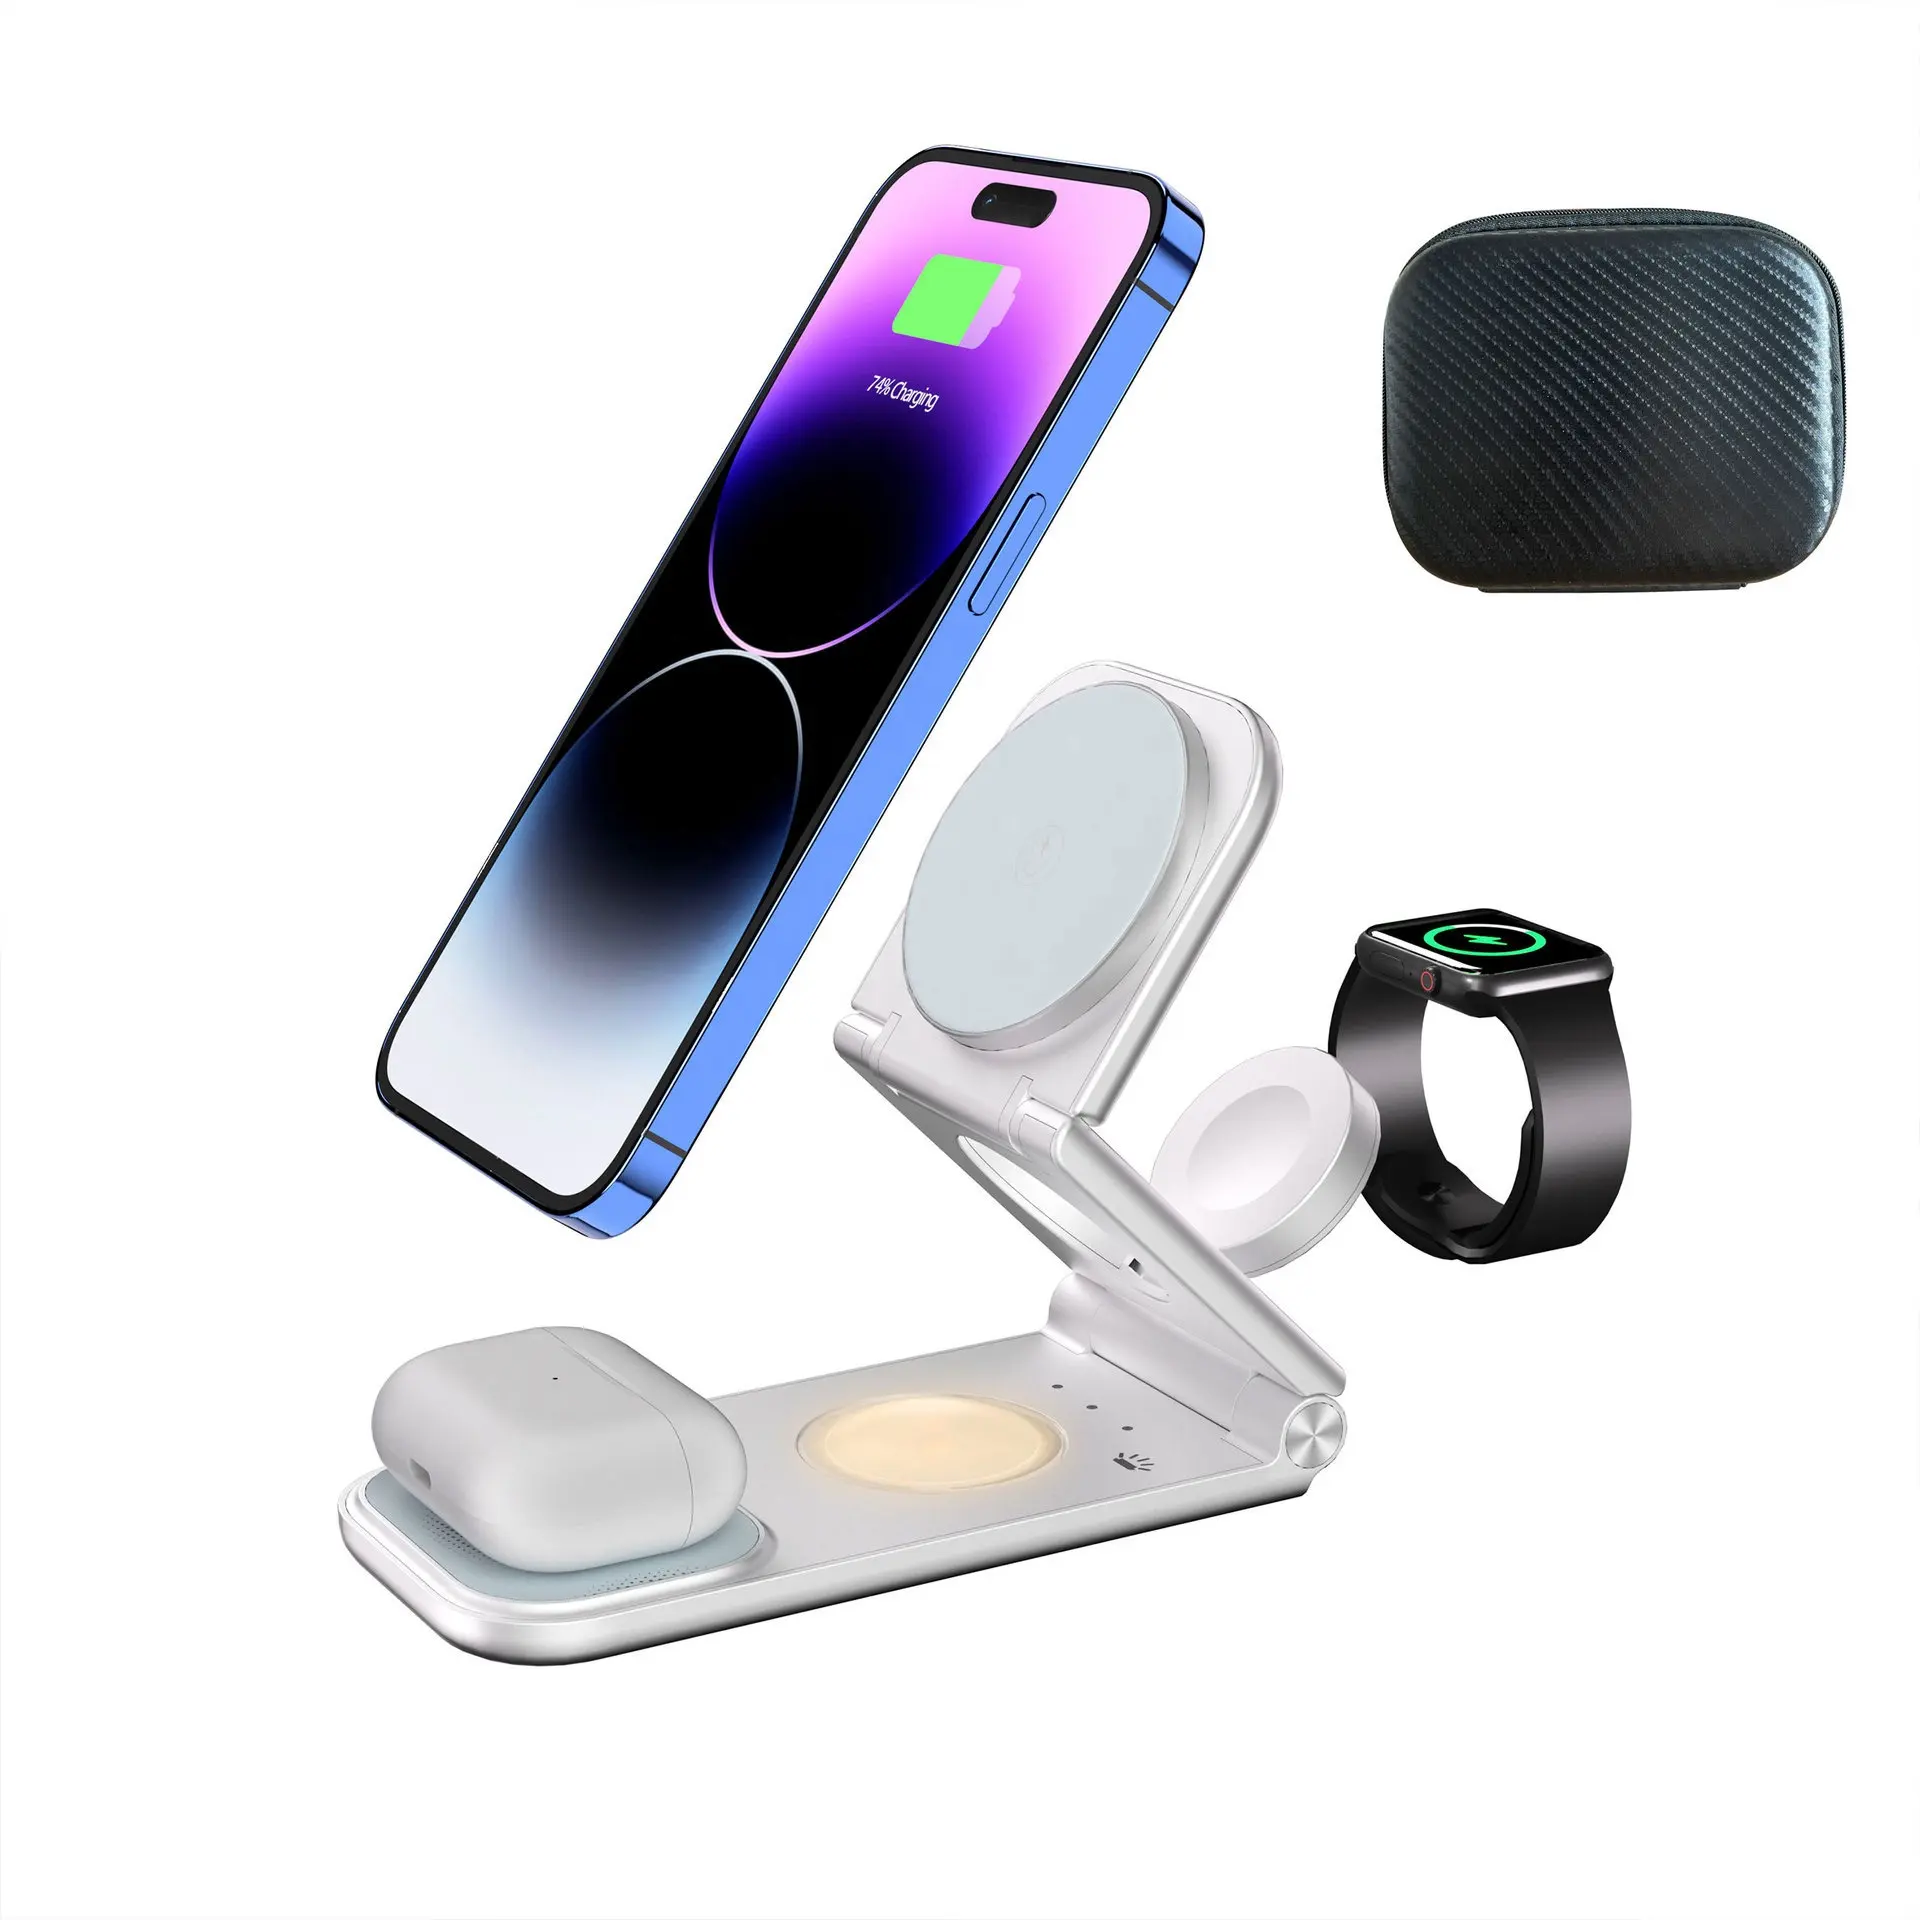 Apple cihazlar için kablosuz iPhone şarj cihazı 3 in 1 şarj istasyonu, iPhone & AirPods & IWatch için seyahat manyetik şarj aleti pedi